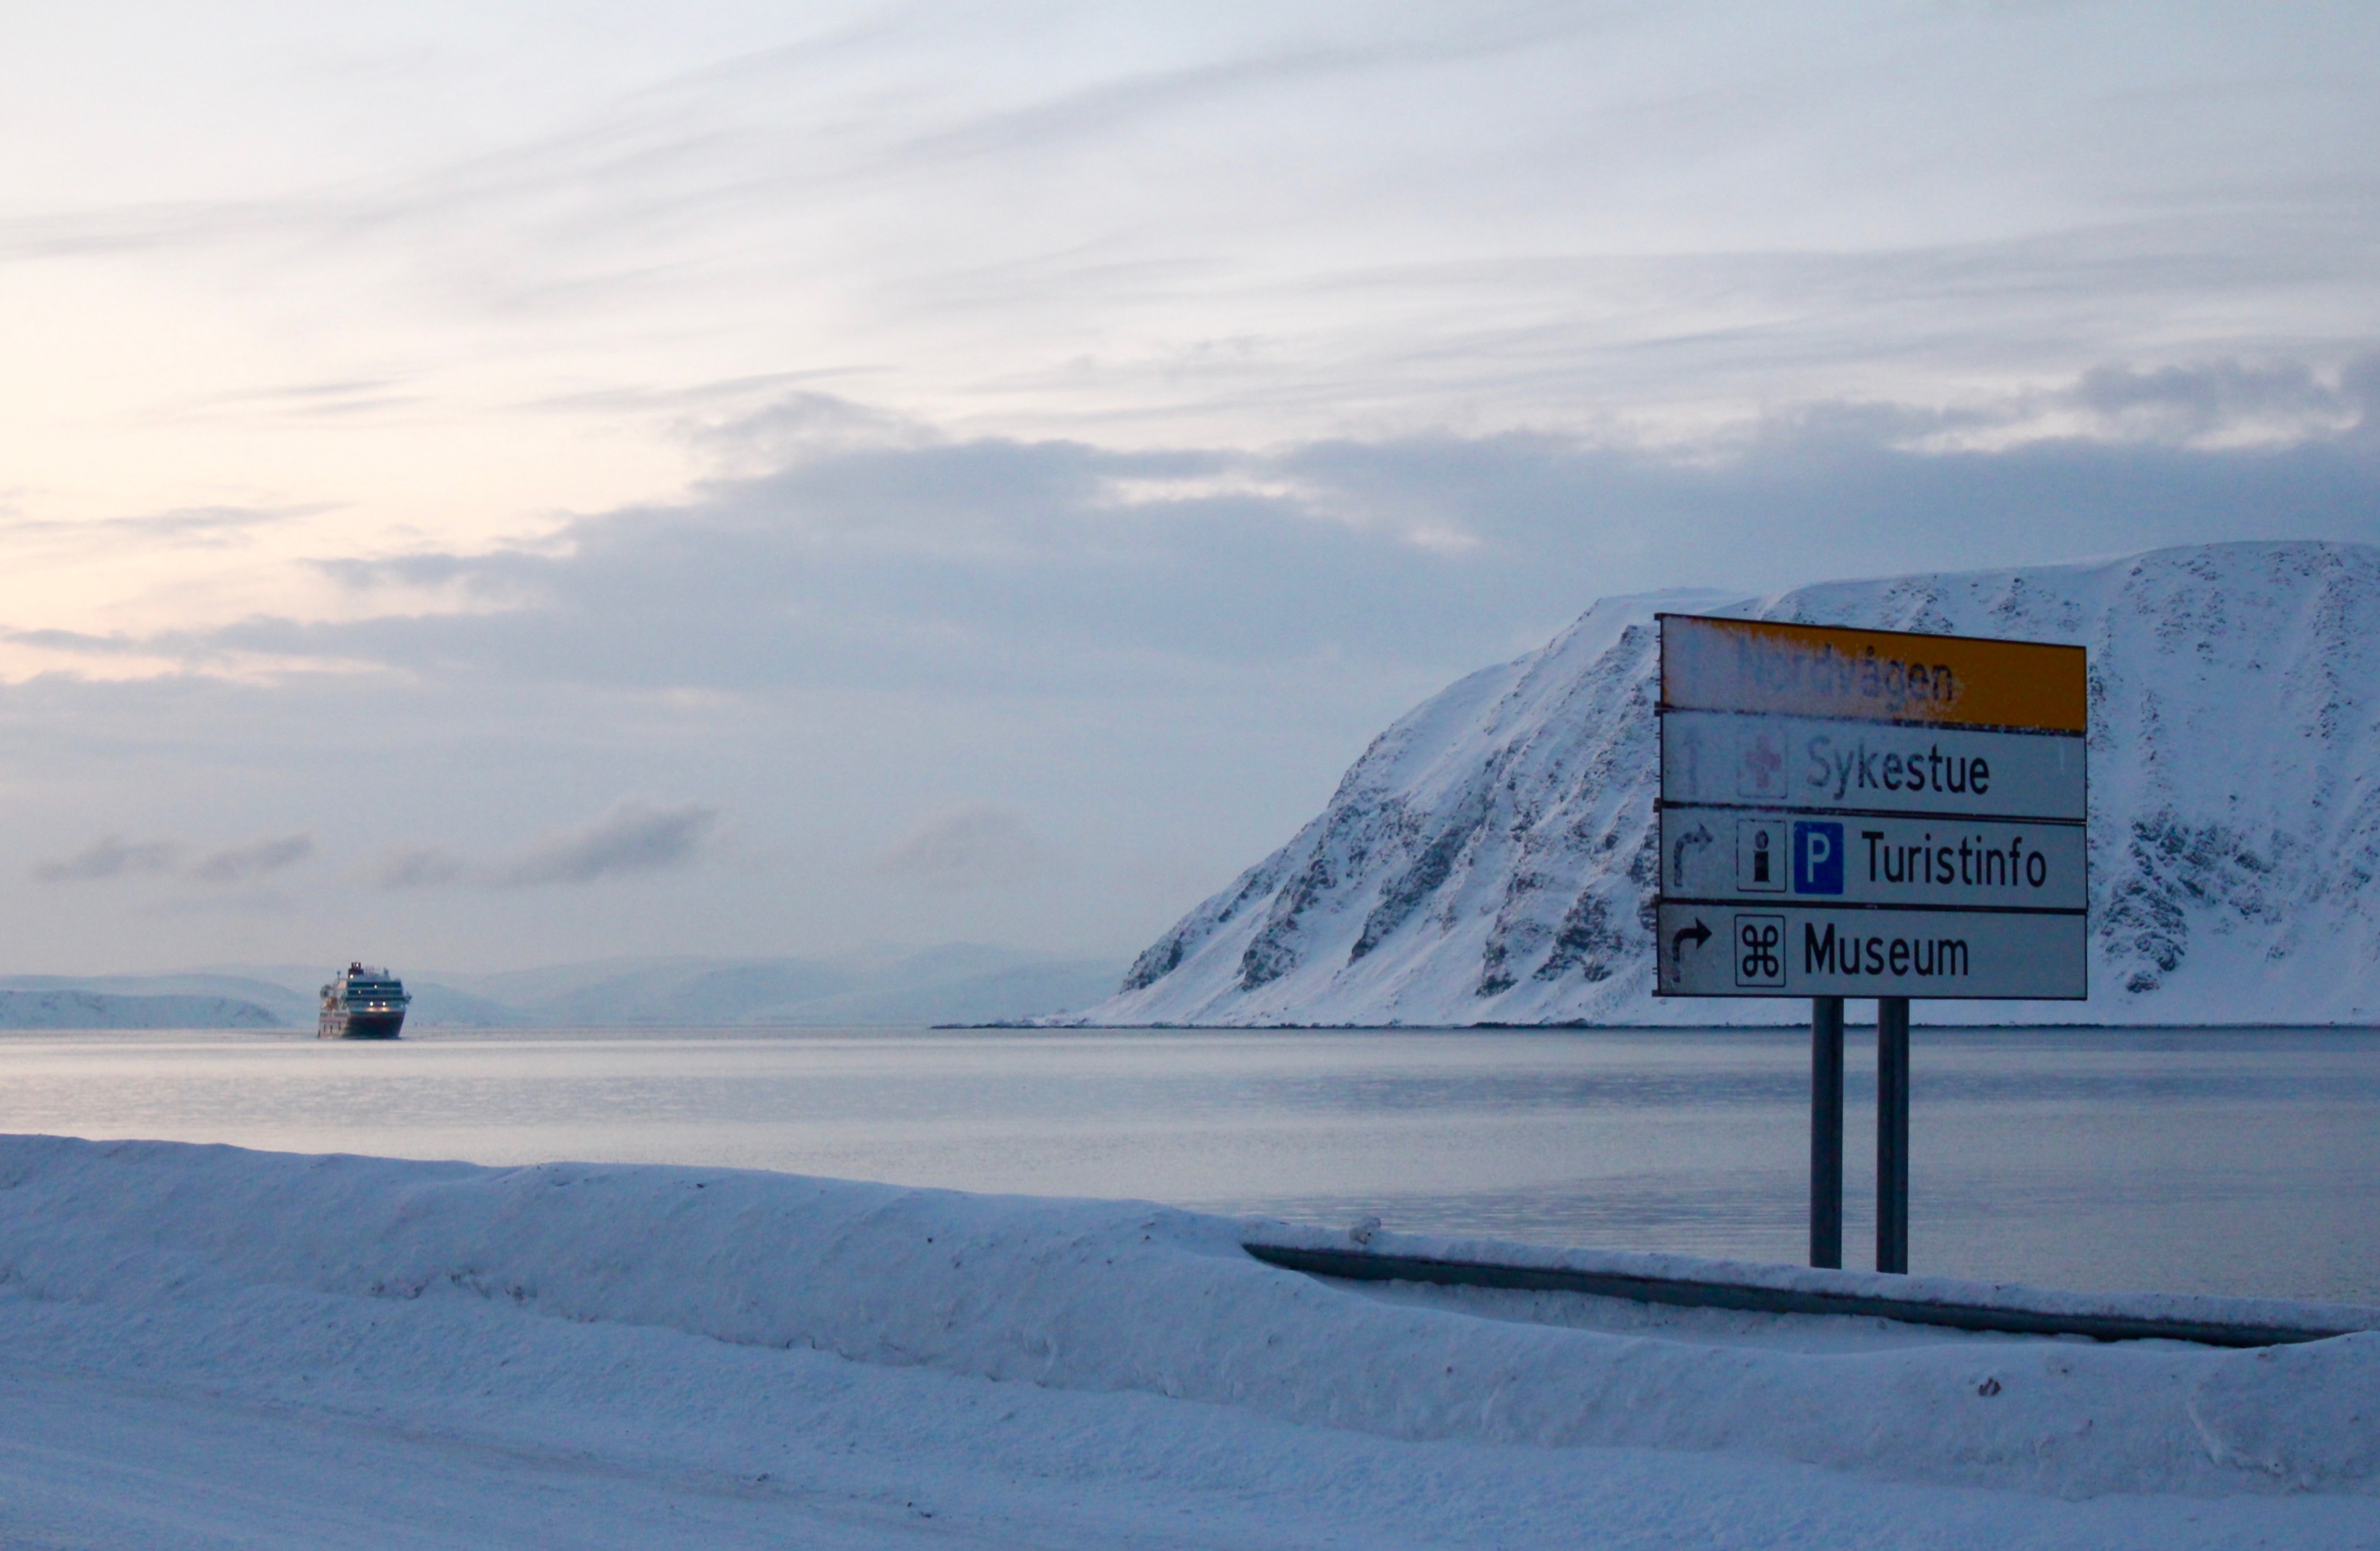 Honningsvåg ist die nördlichste Stadt Europas und neben dem Fischfang leben die Einheimischen hier vom Tourismus. Die meisten Touristen erreichen die Insel Magerøya tatsächlich auch mit dem Schiff.